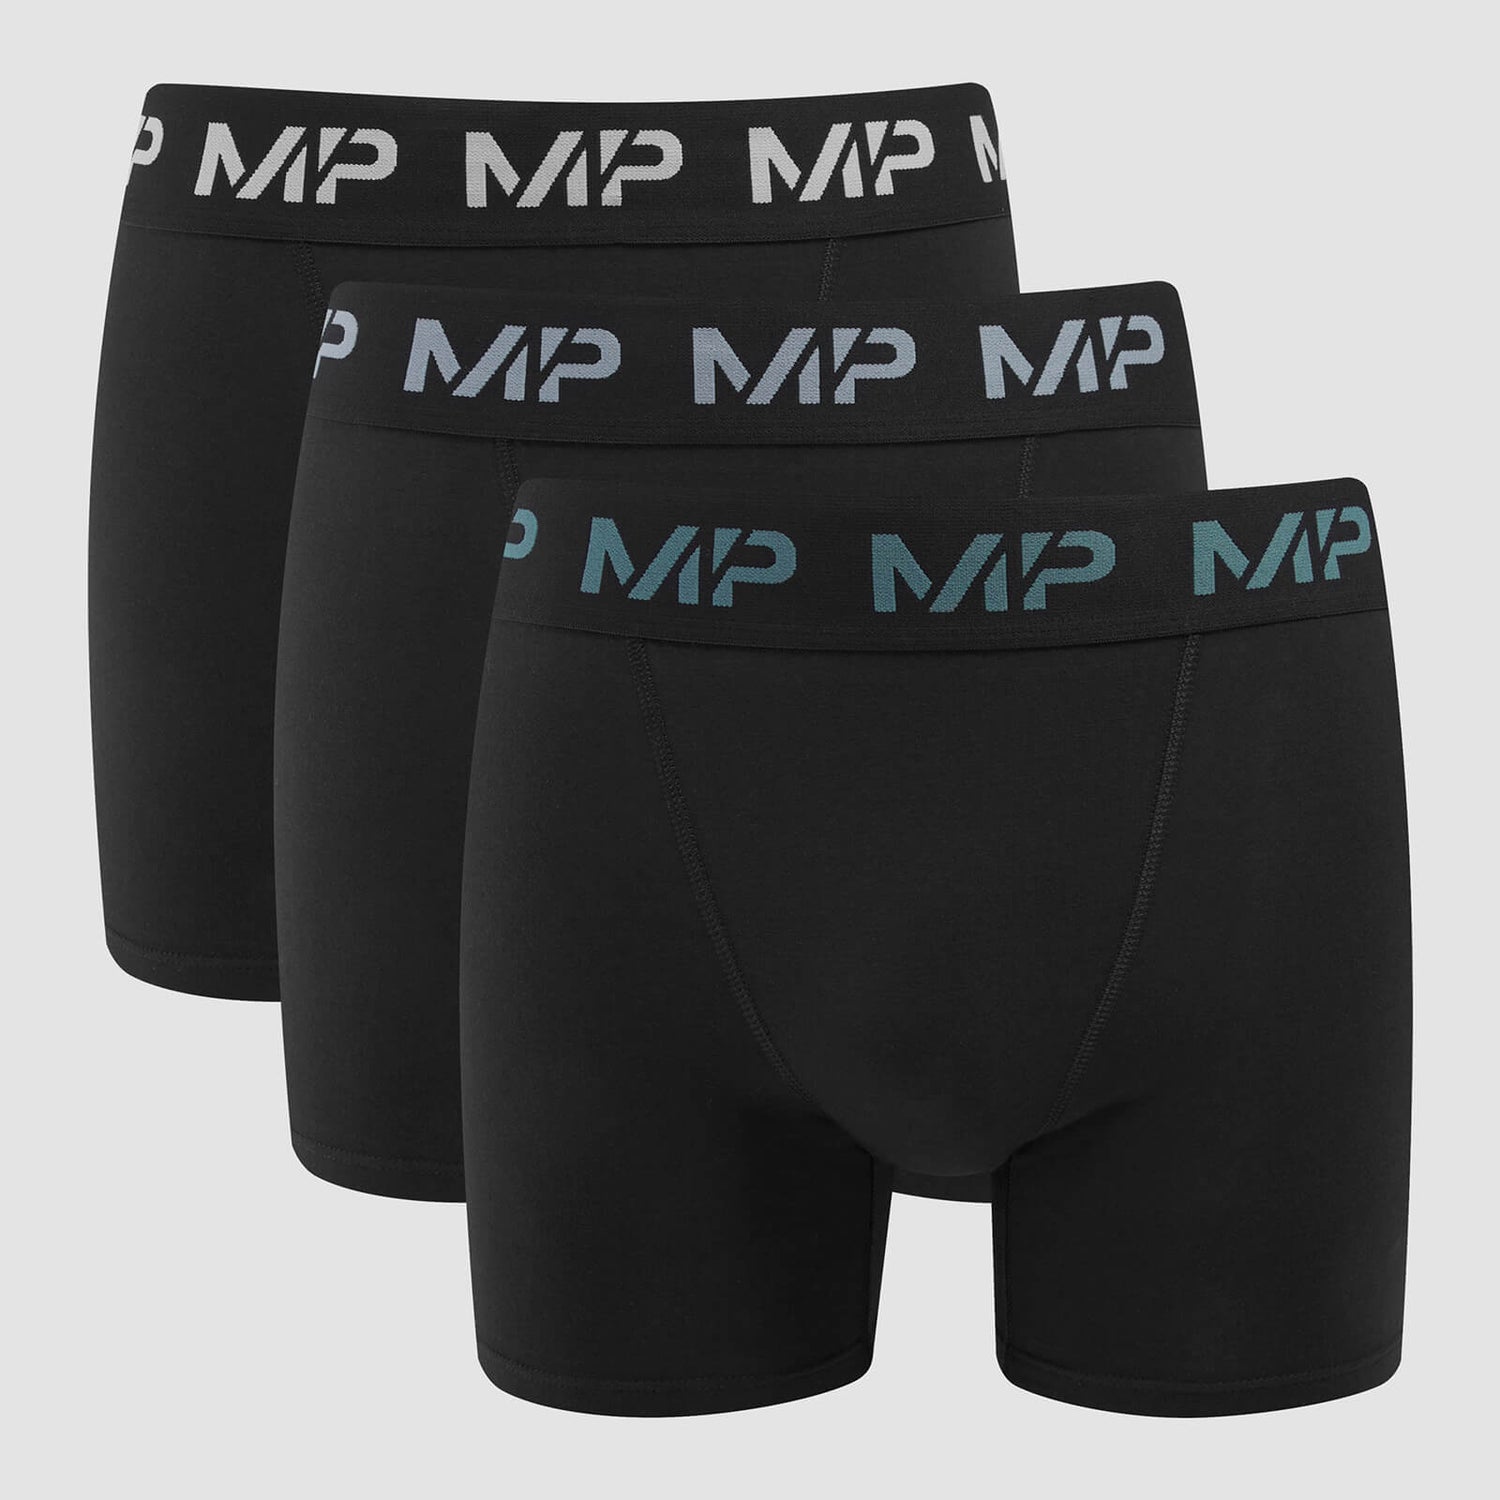 Мужские боксеры MP с цветным логотипом (3 пары) — Черный/дымчато-синий/синий/темно-серый - XXS